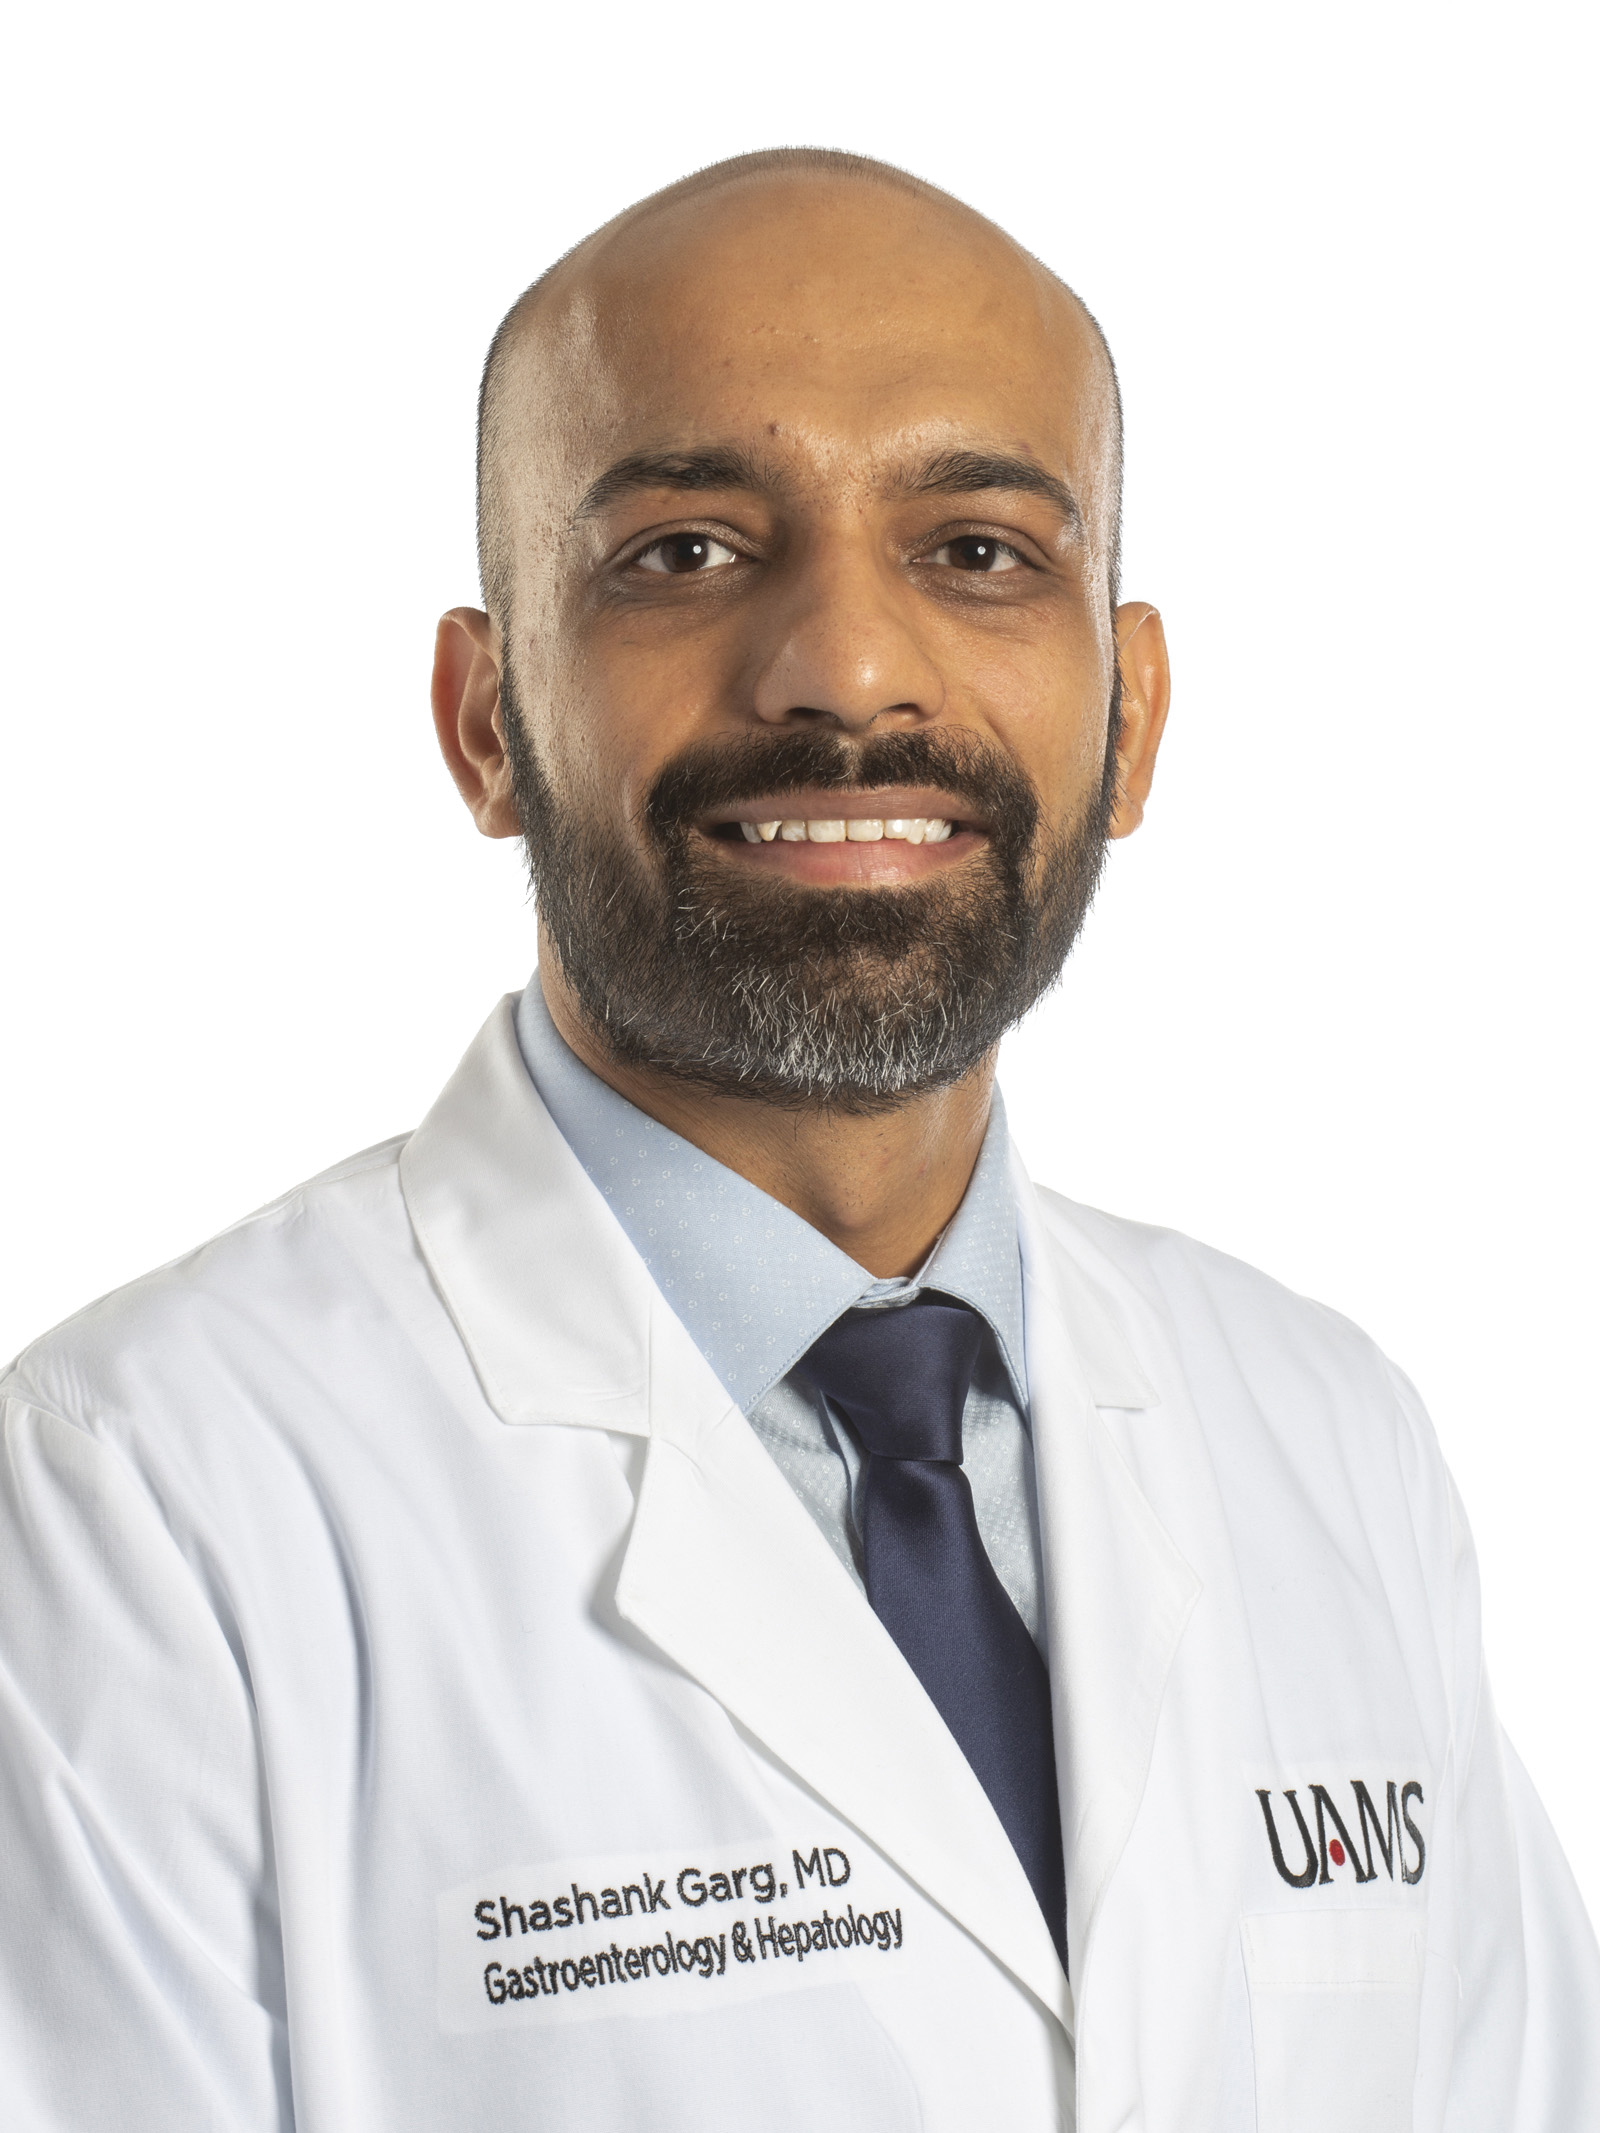 Shashank Garg, M.D. UAMS Health